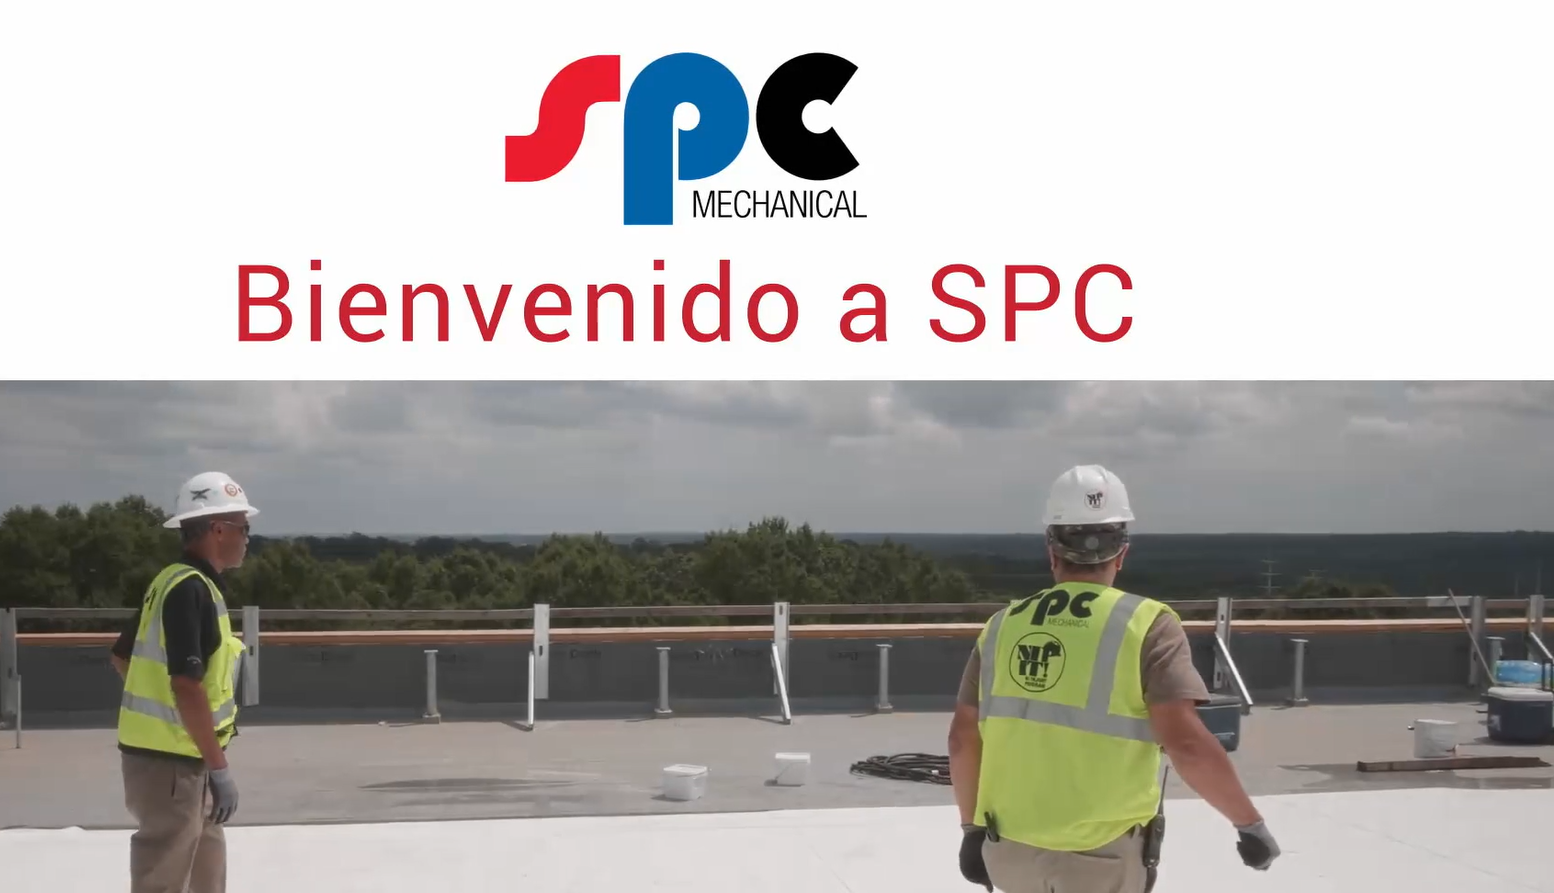 SPC Mechanical Bienvenido a SPC